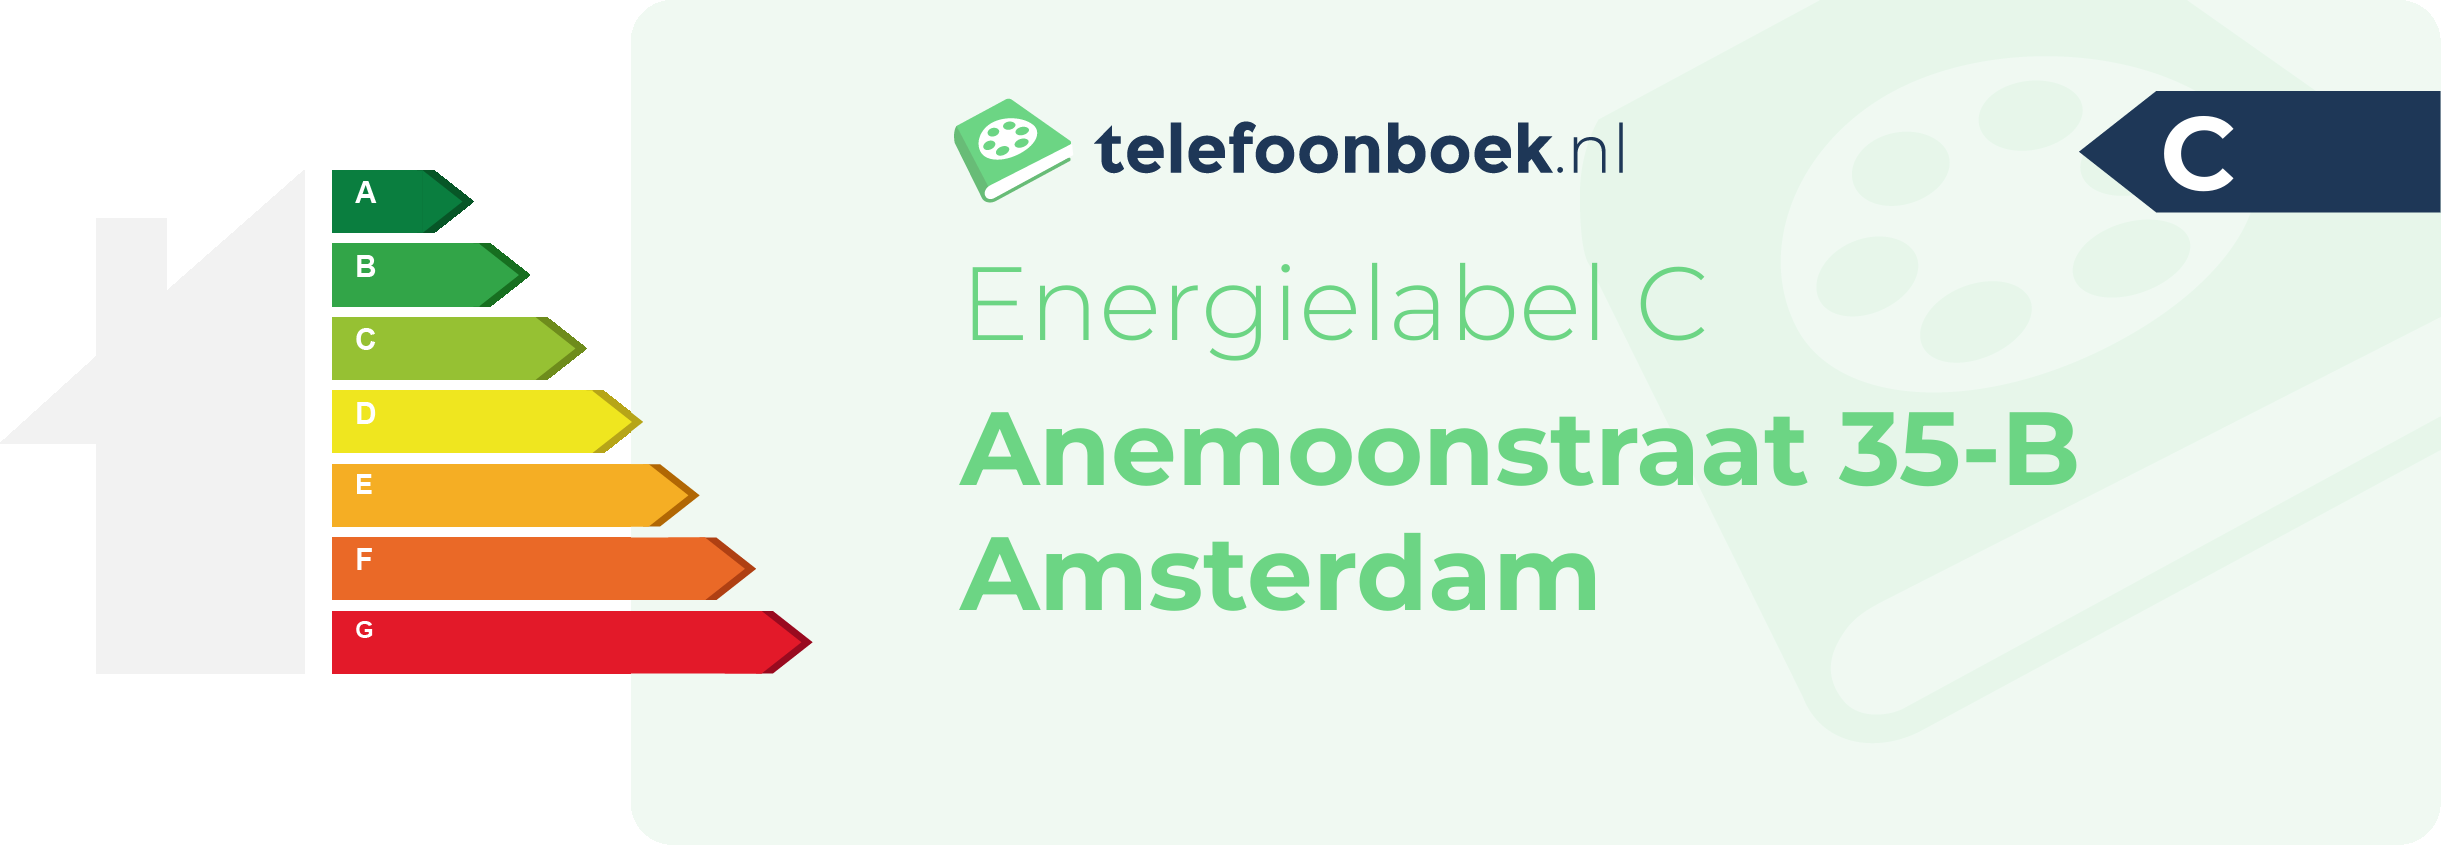 Energielabel Anemoonstraat 35-B Amsterdam